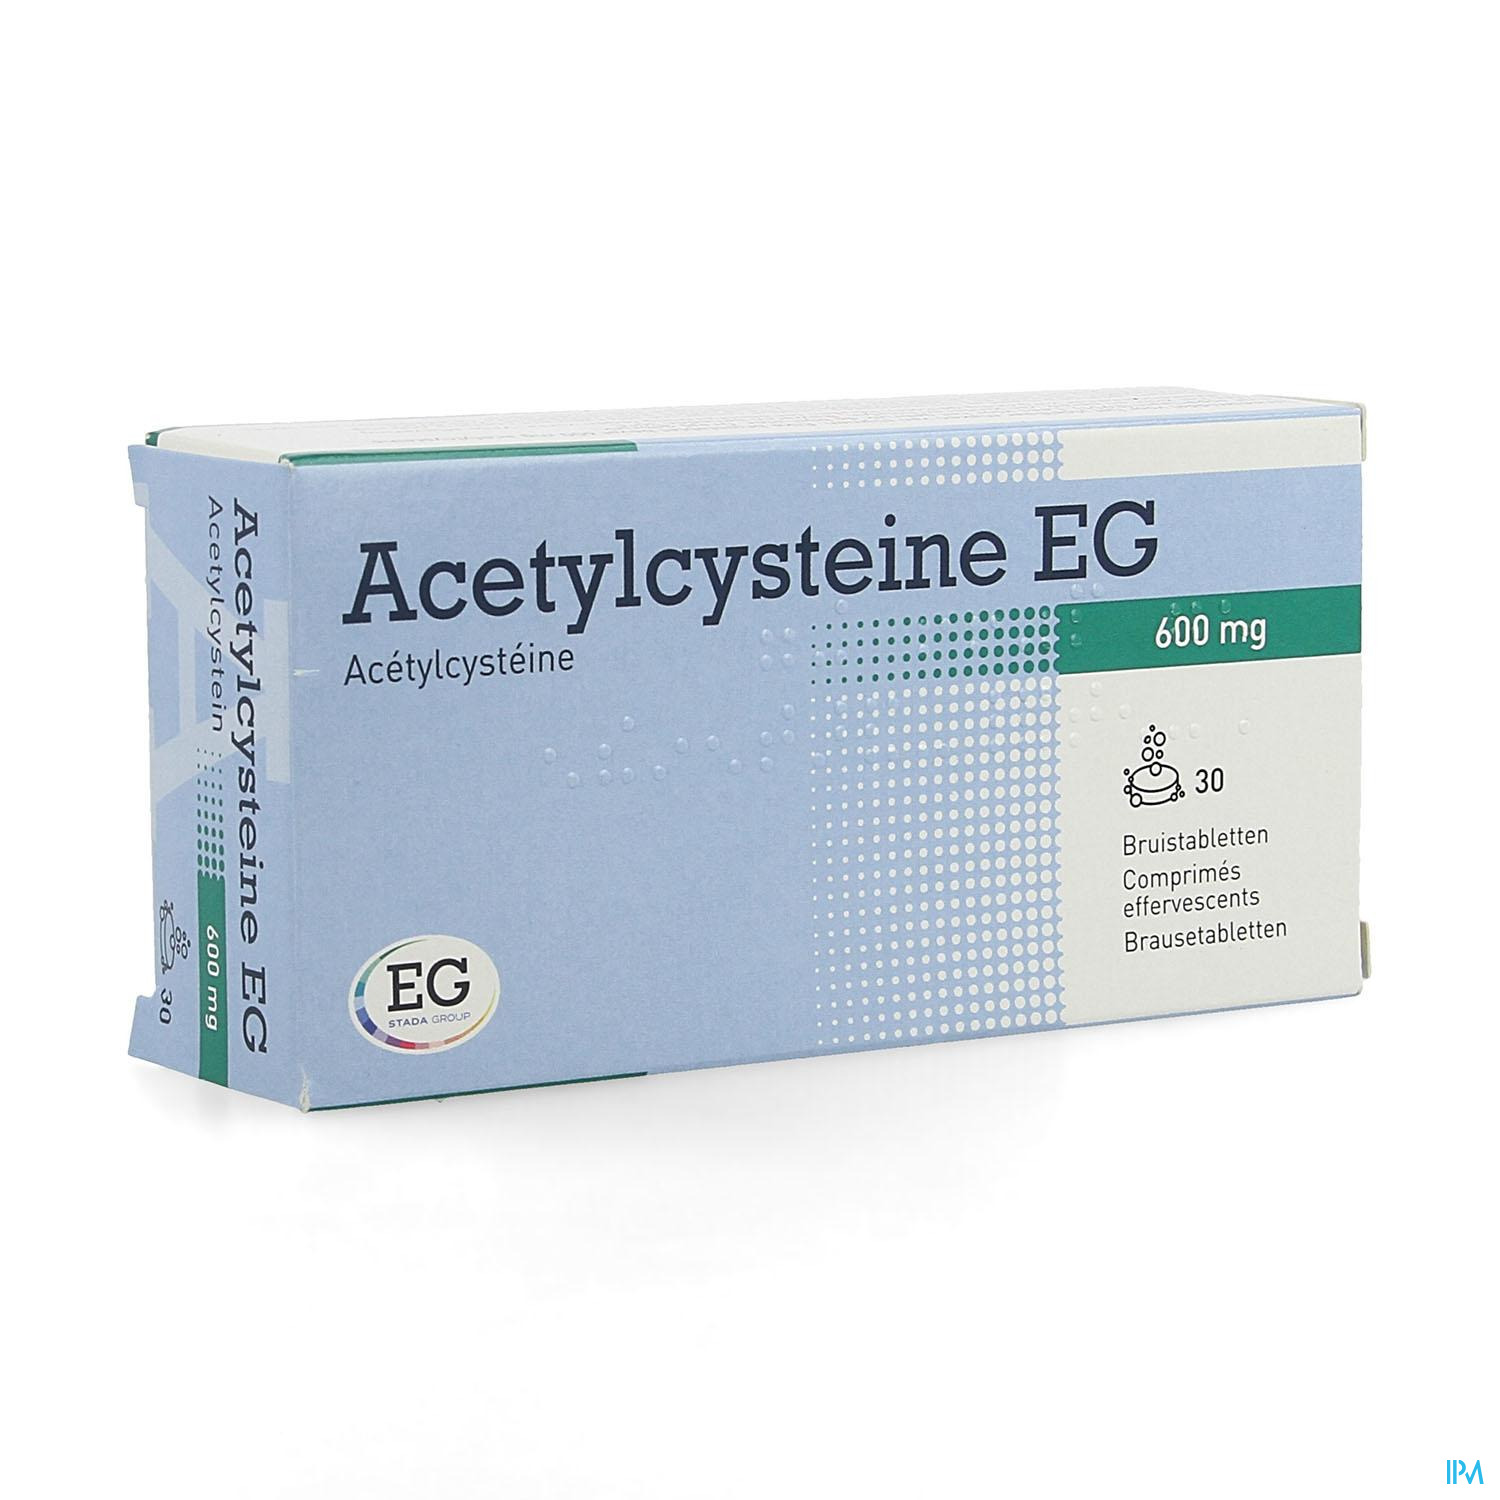 Acetylcysteine EG 600Mg Bruistabl 30X600Mg